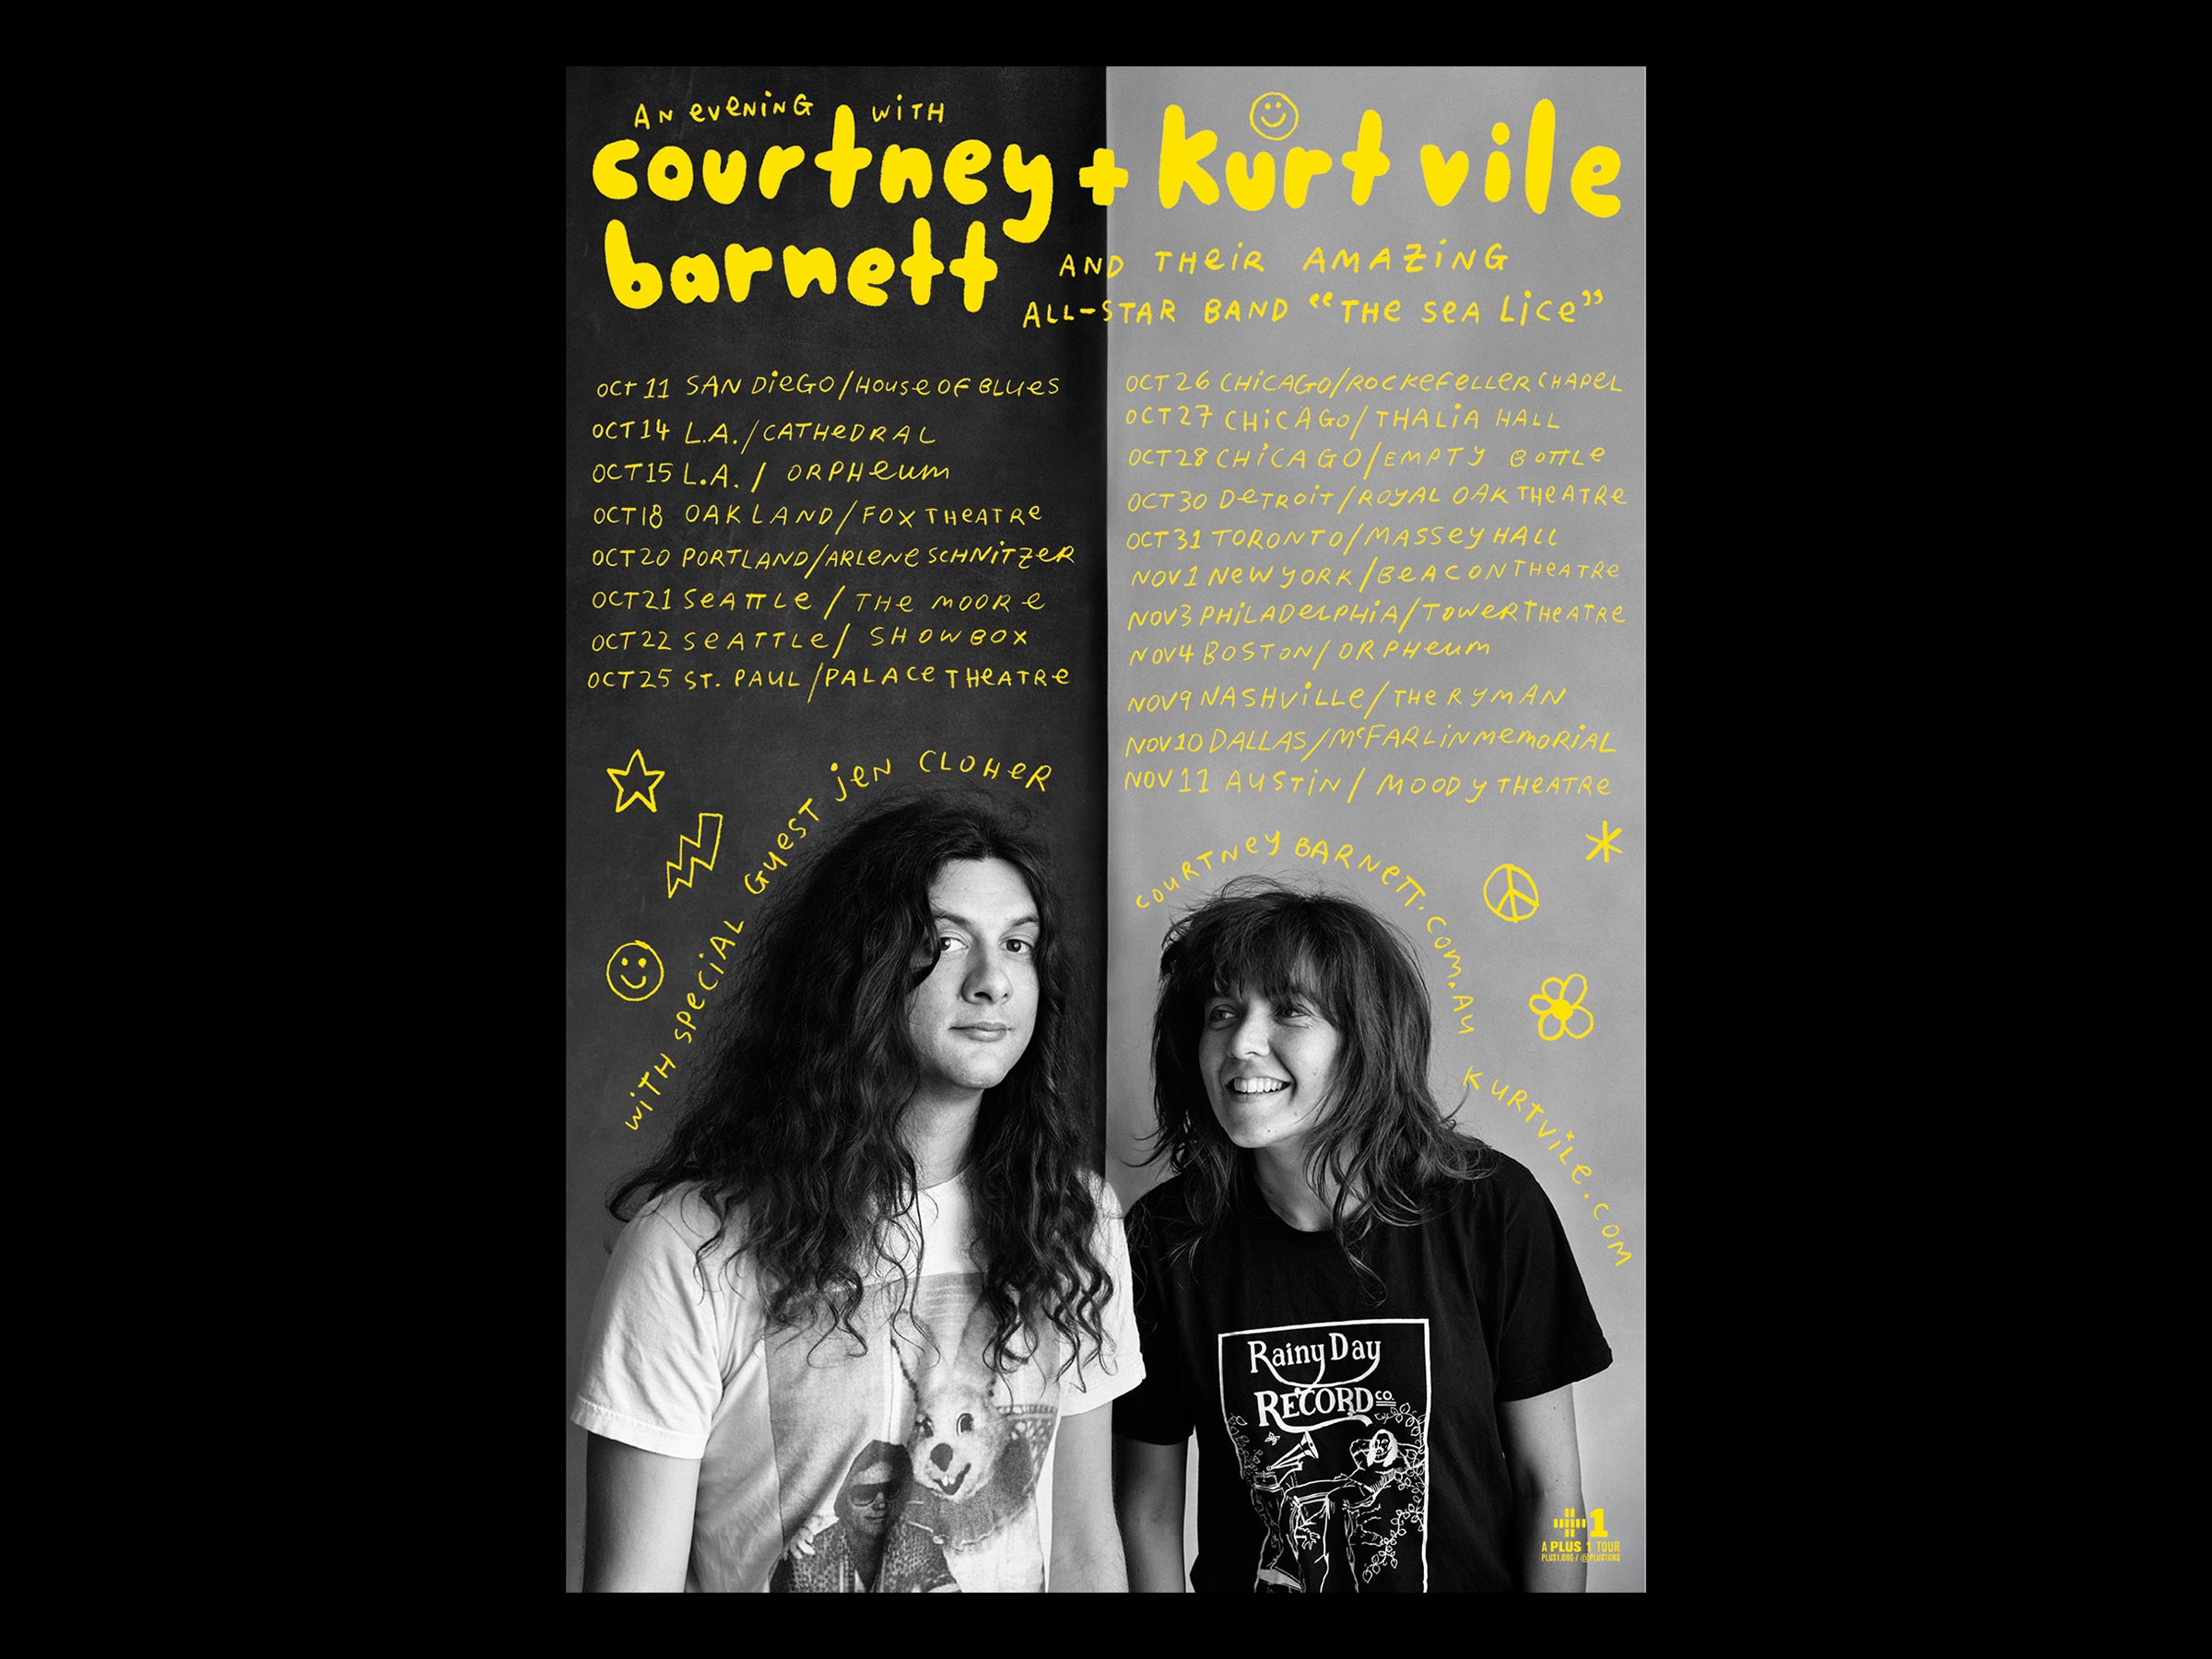 Courtney Barnett & Kurt Vile